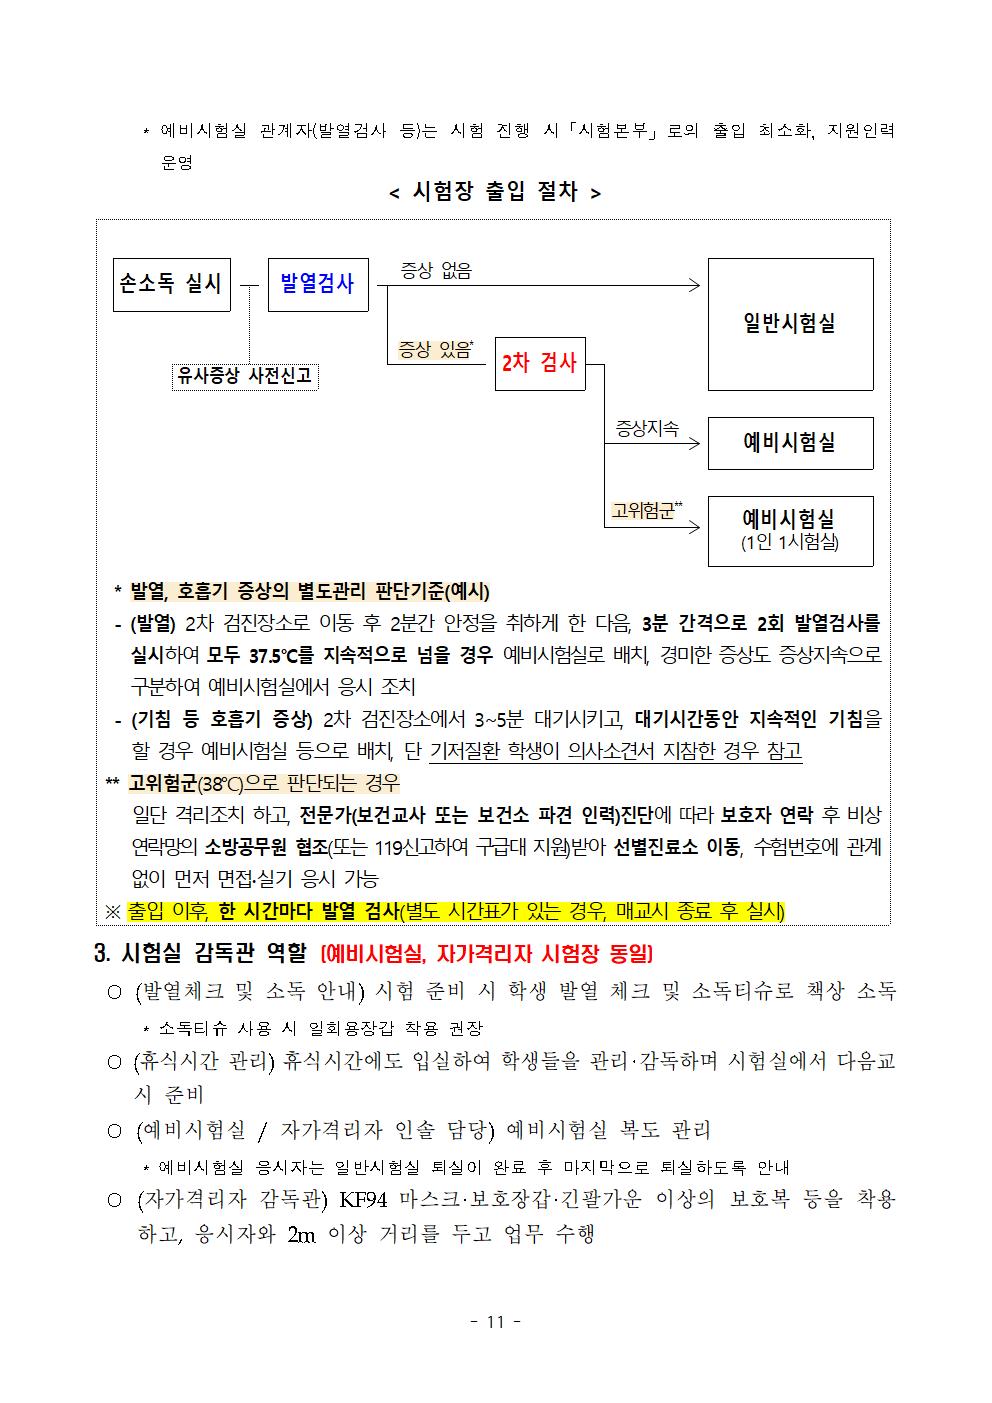 2021학년도 학교별 입학전형 안전관리 계획_한국게임과학고(홈페이지게시)013